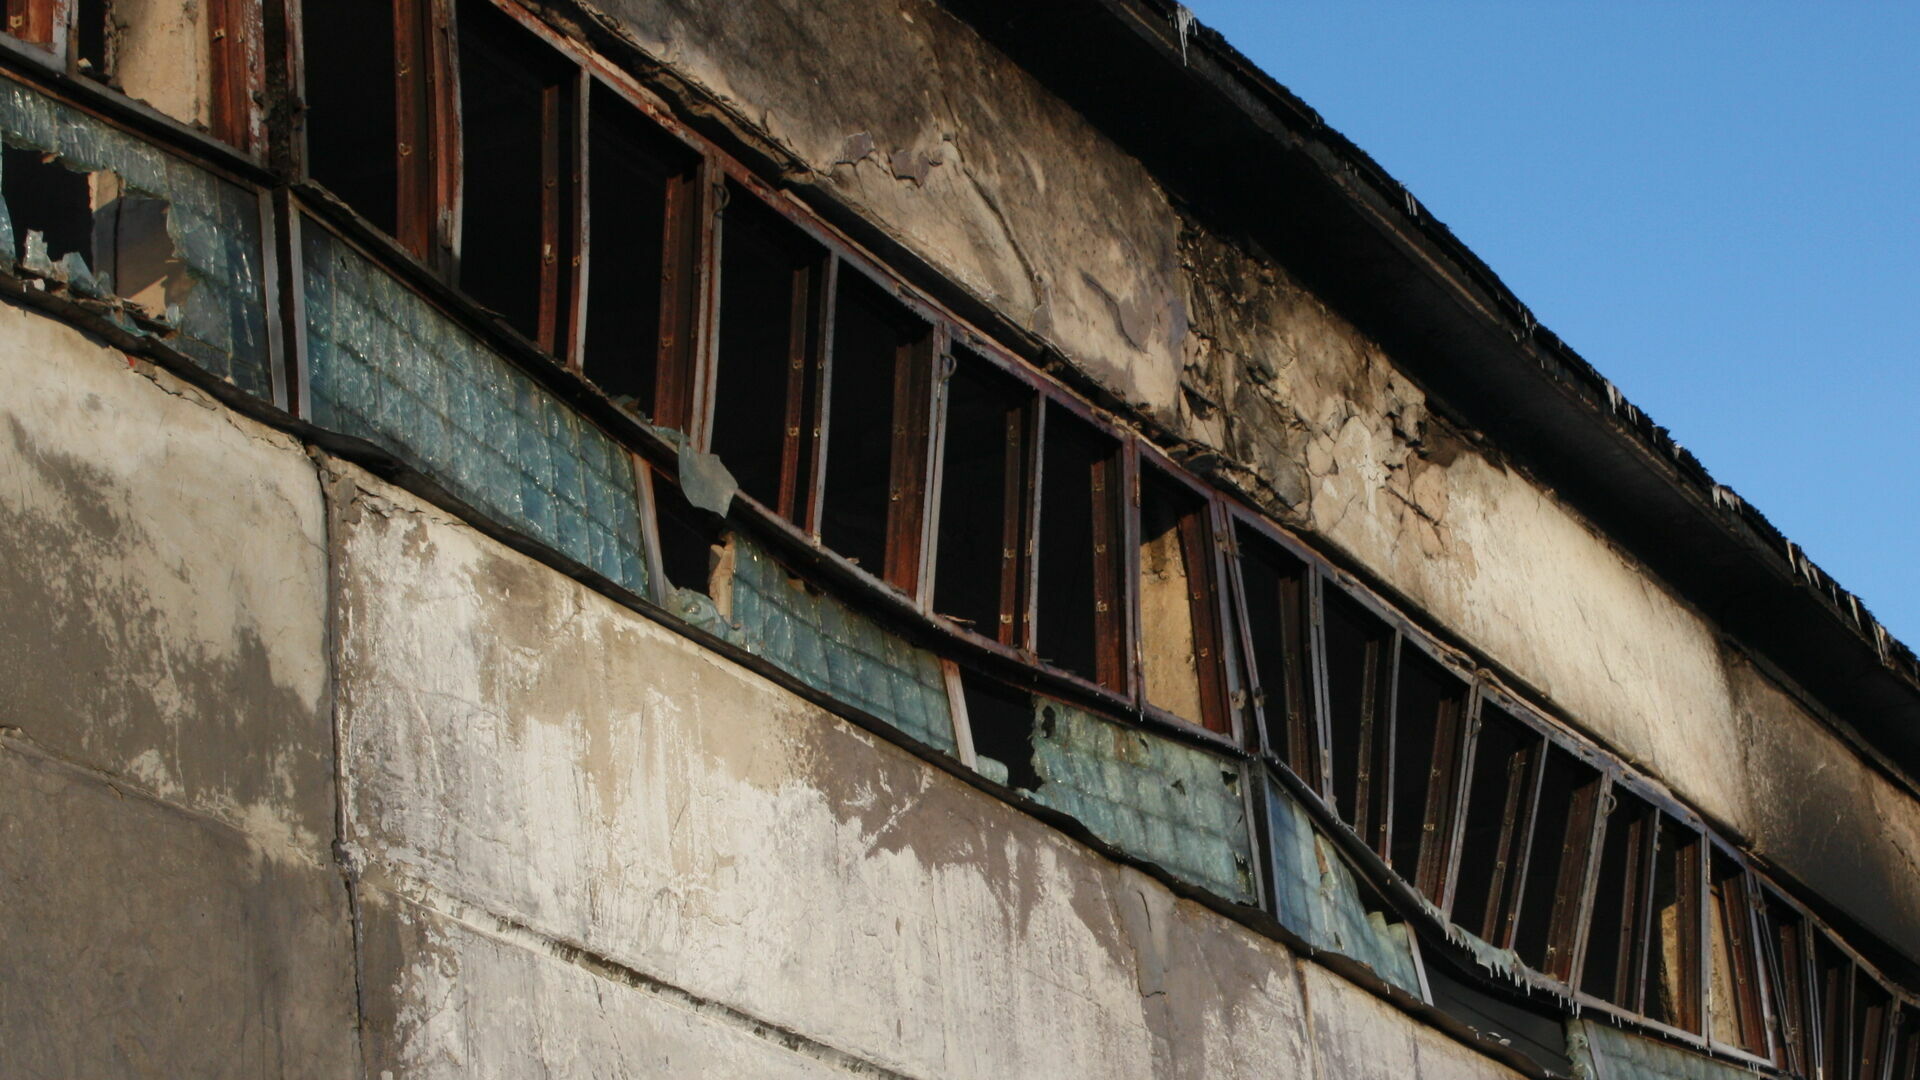 В Пермском крае ночью горели семь жилых домов